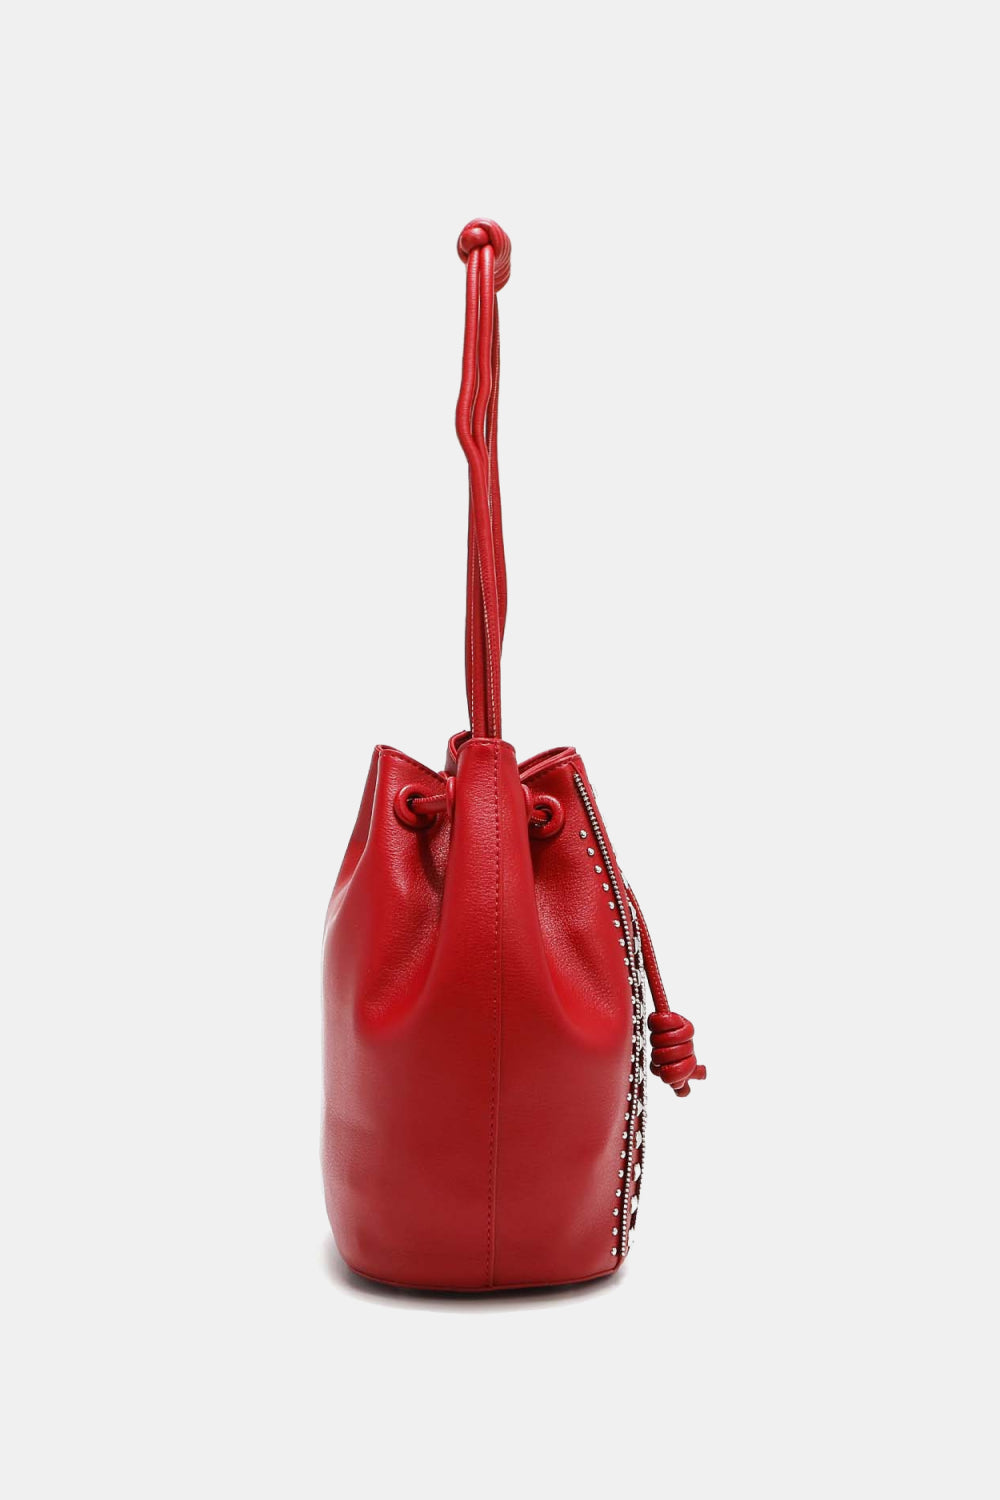 Nicole Lee USA Amy Studded Bucket Bag - TiffanyzKlozet